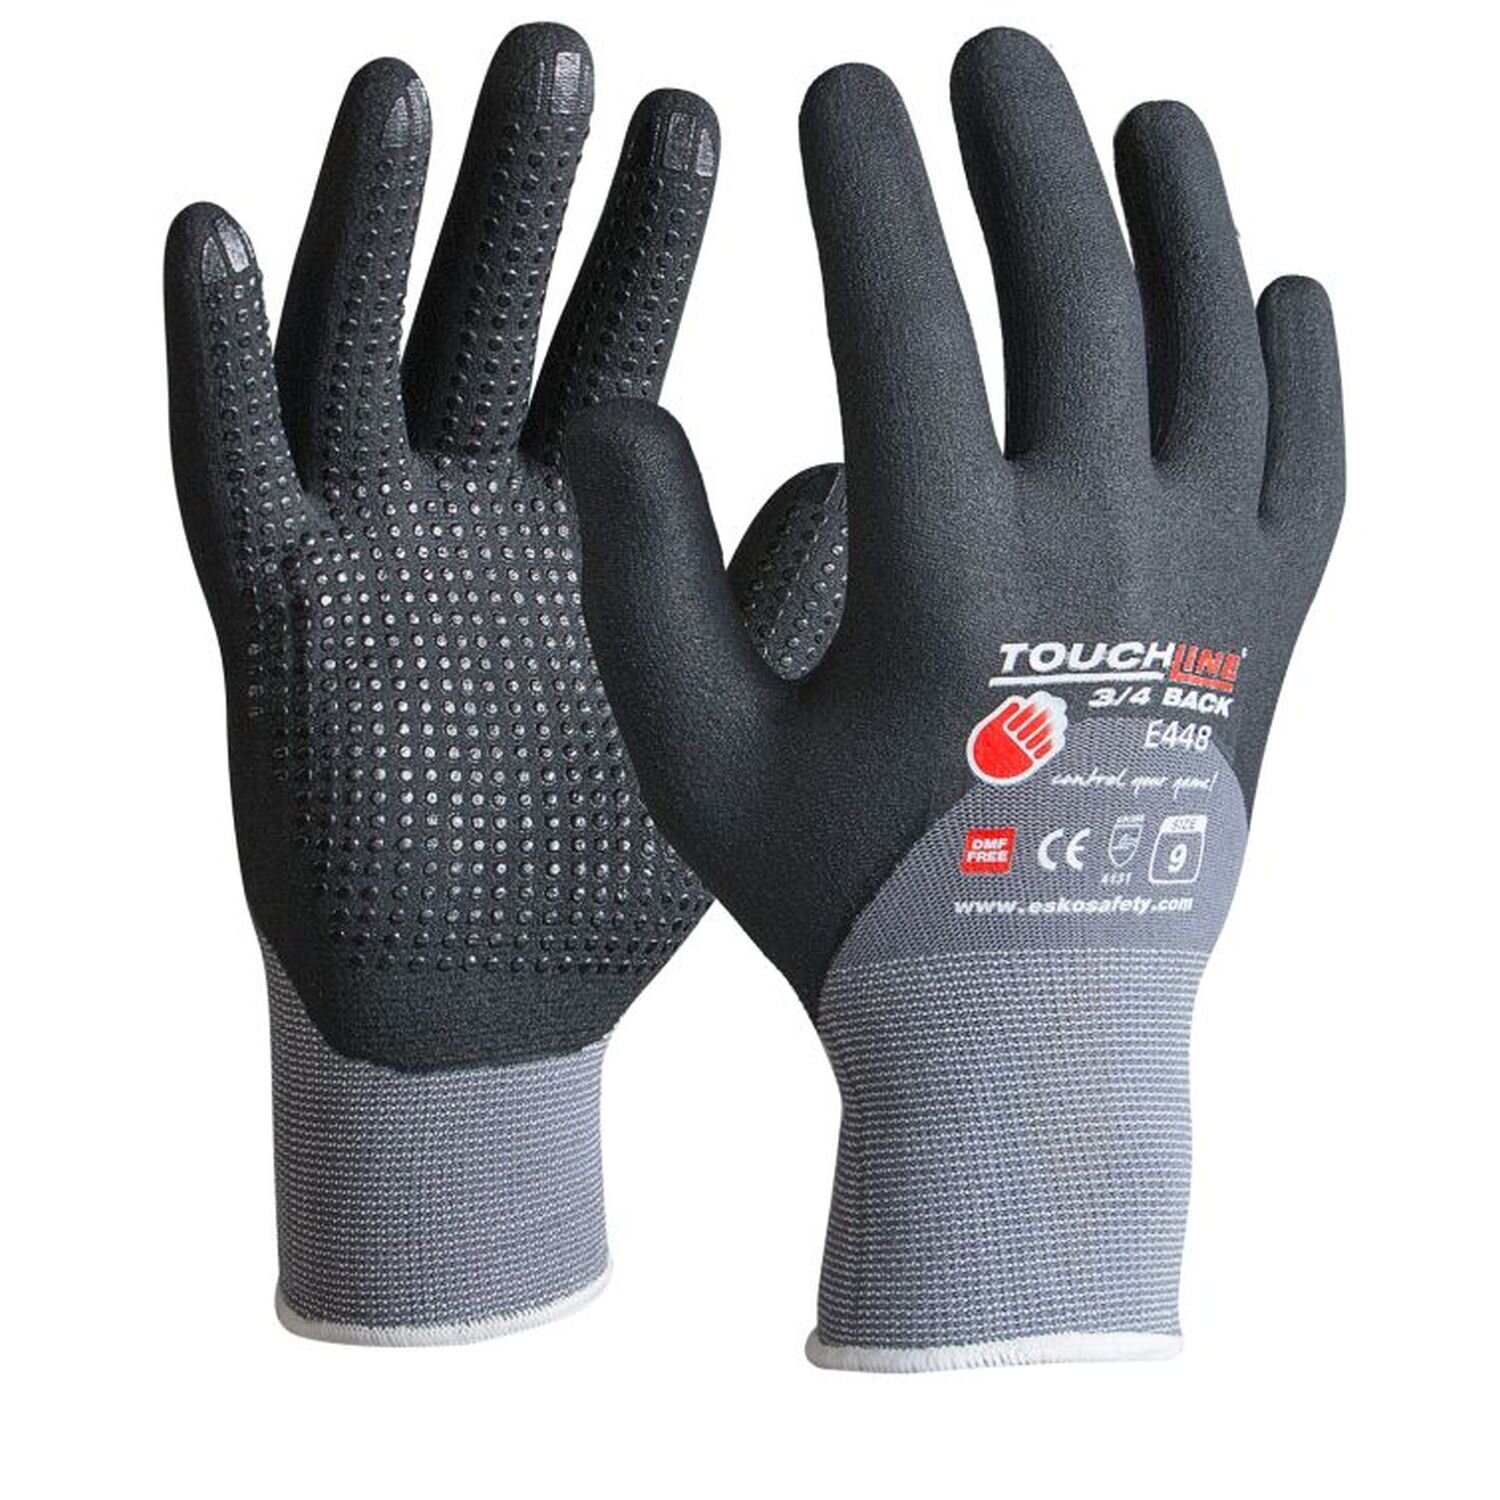 Esko E448 Touchline 3/4 Back+Dots Glove